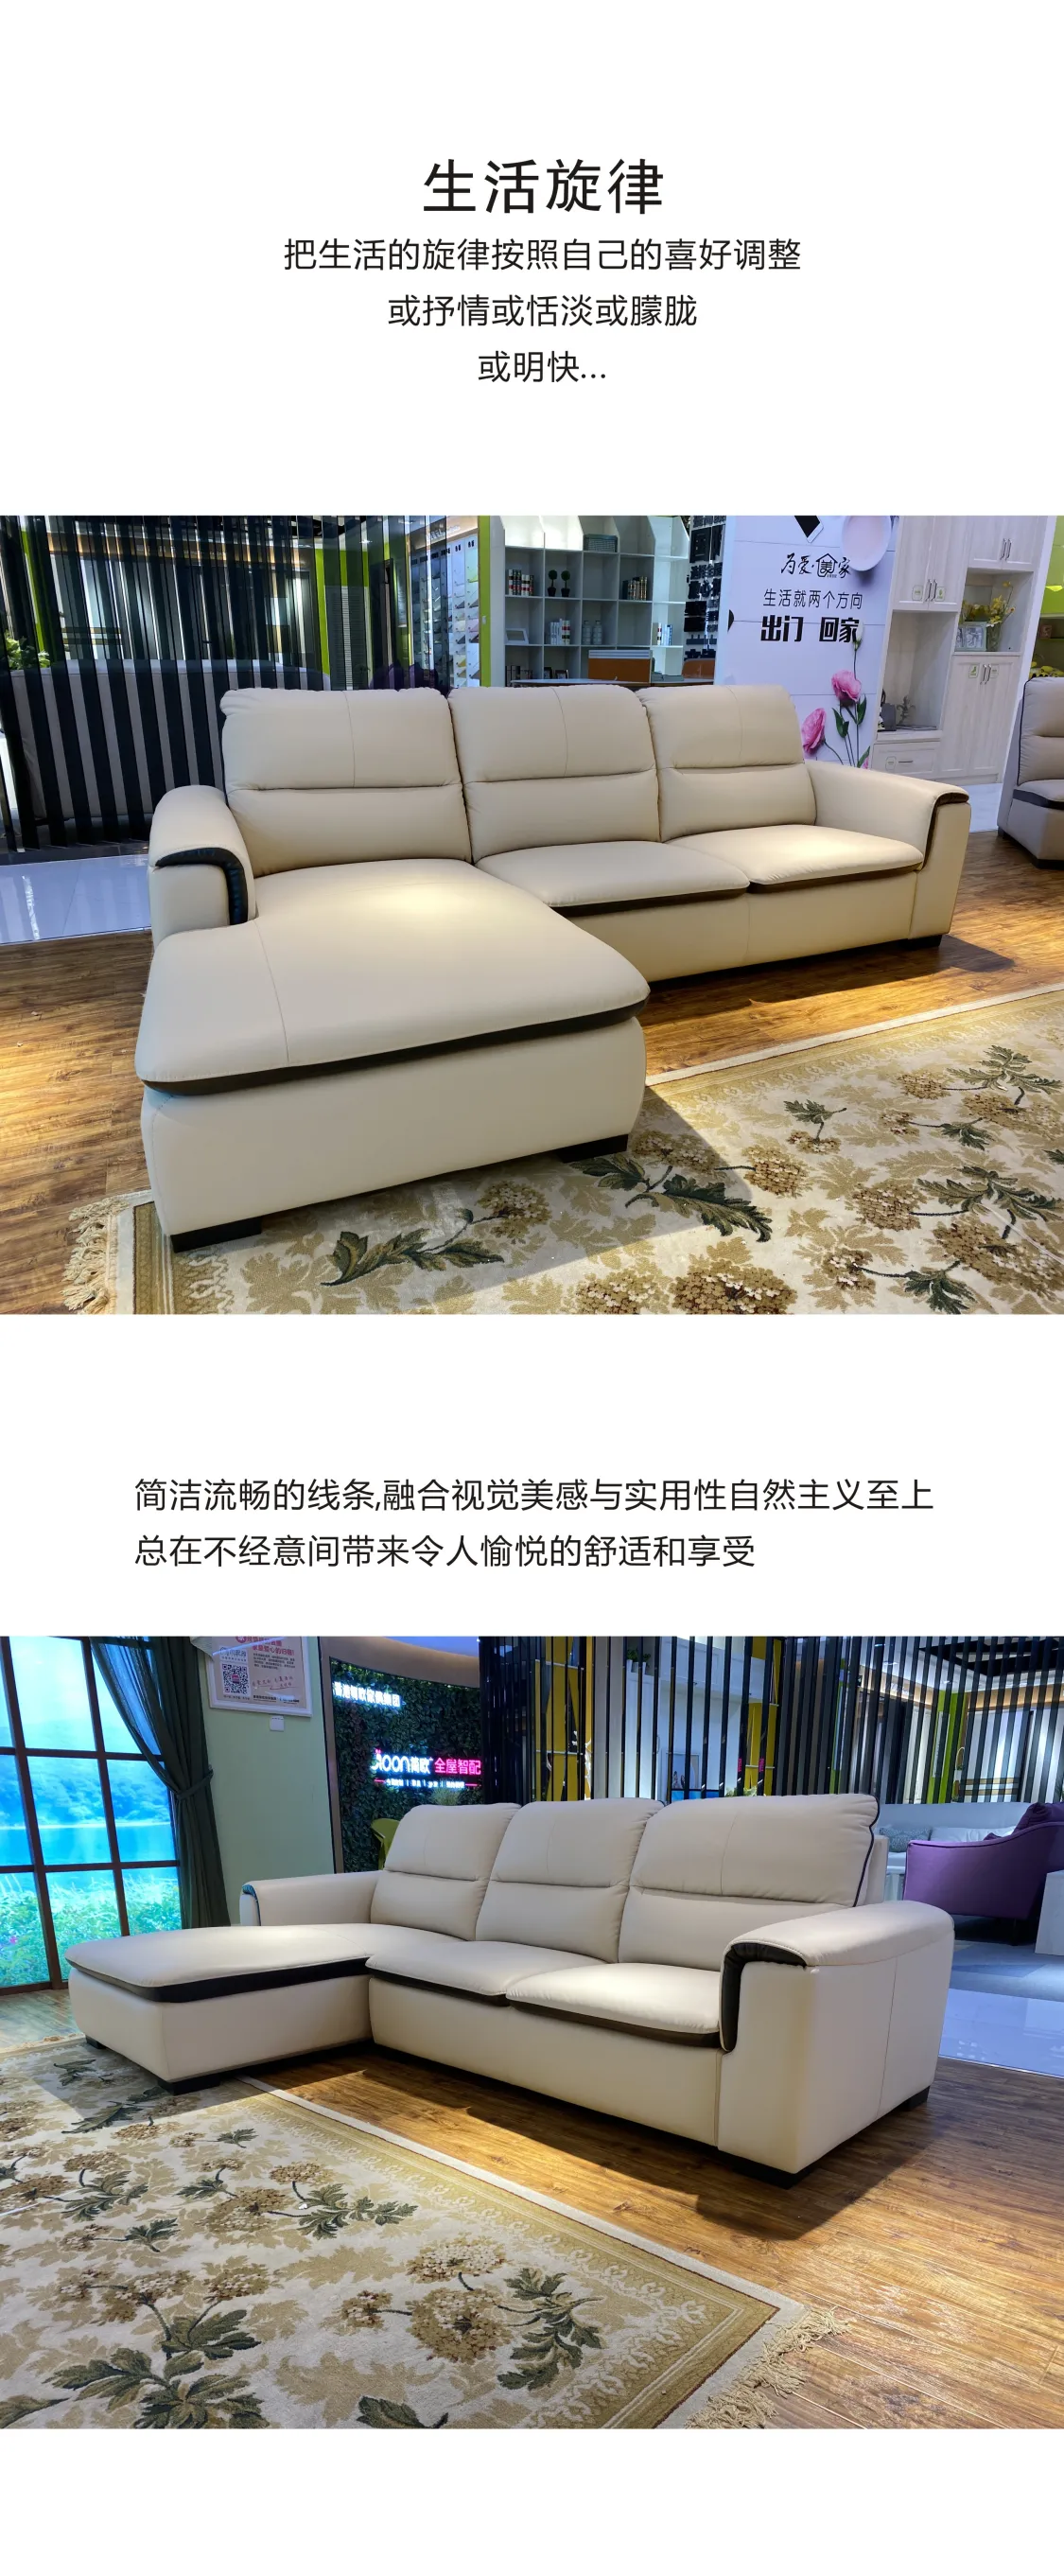 Jioon简欧 现代简奢风格 逸美系沙发 LPO-705(图5)